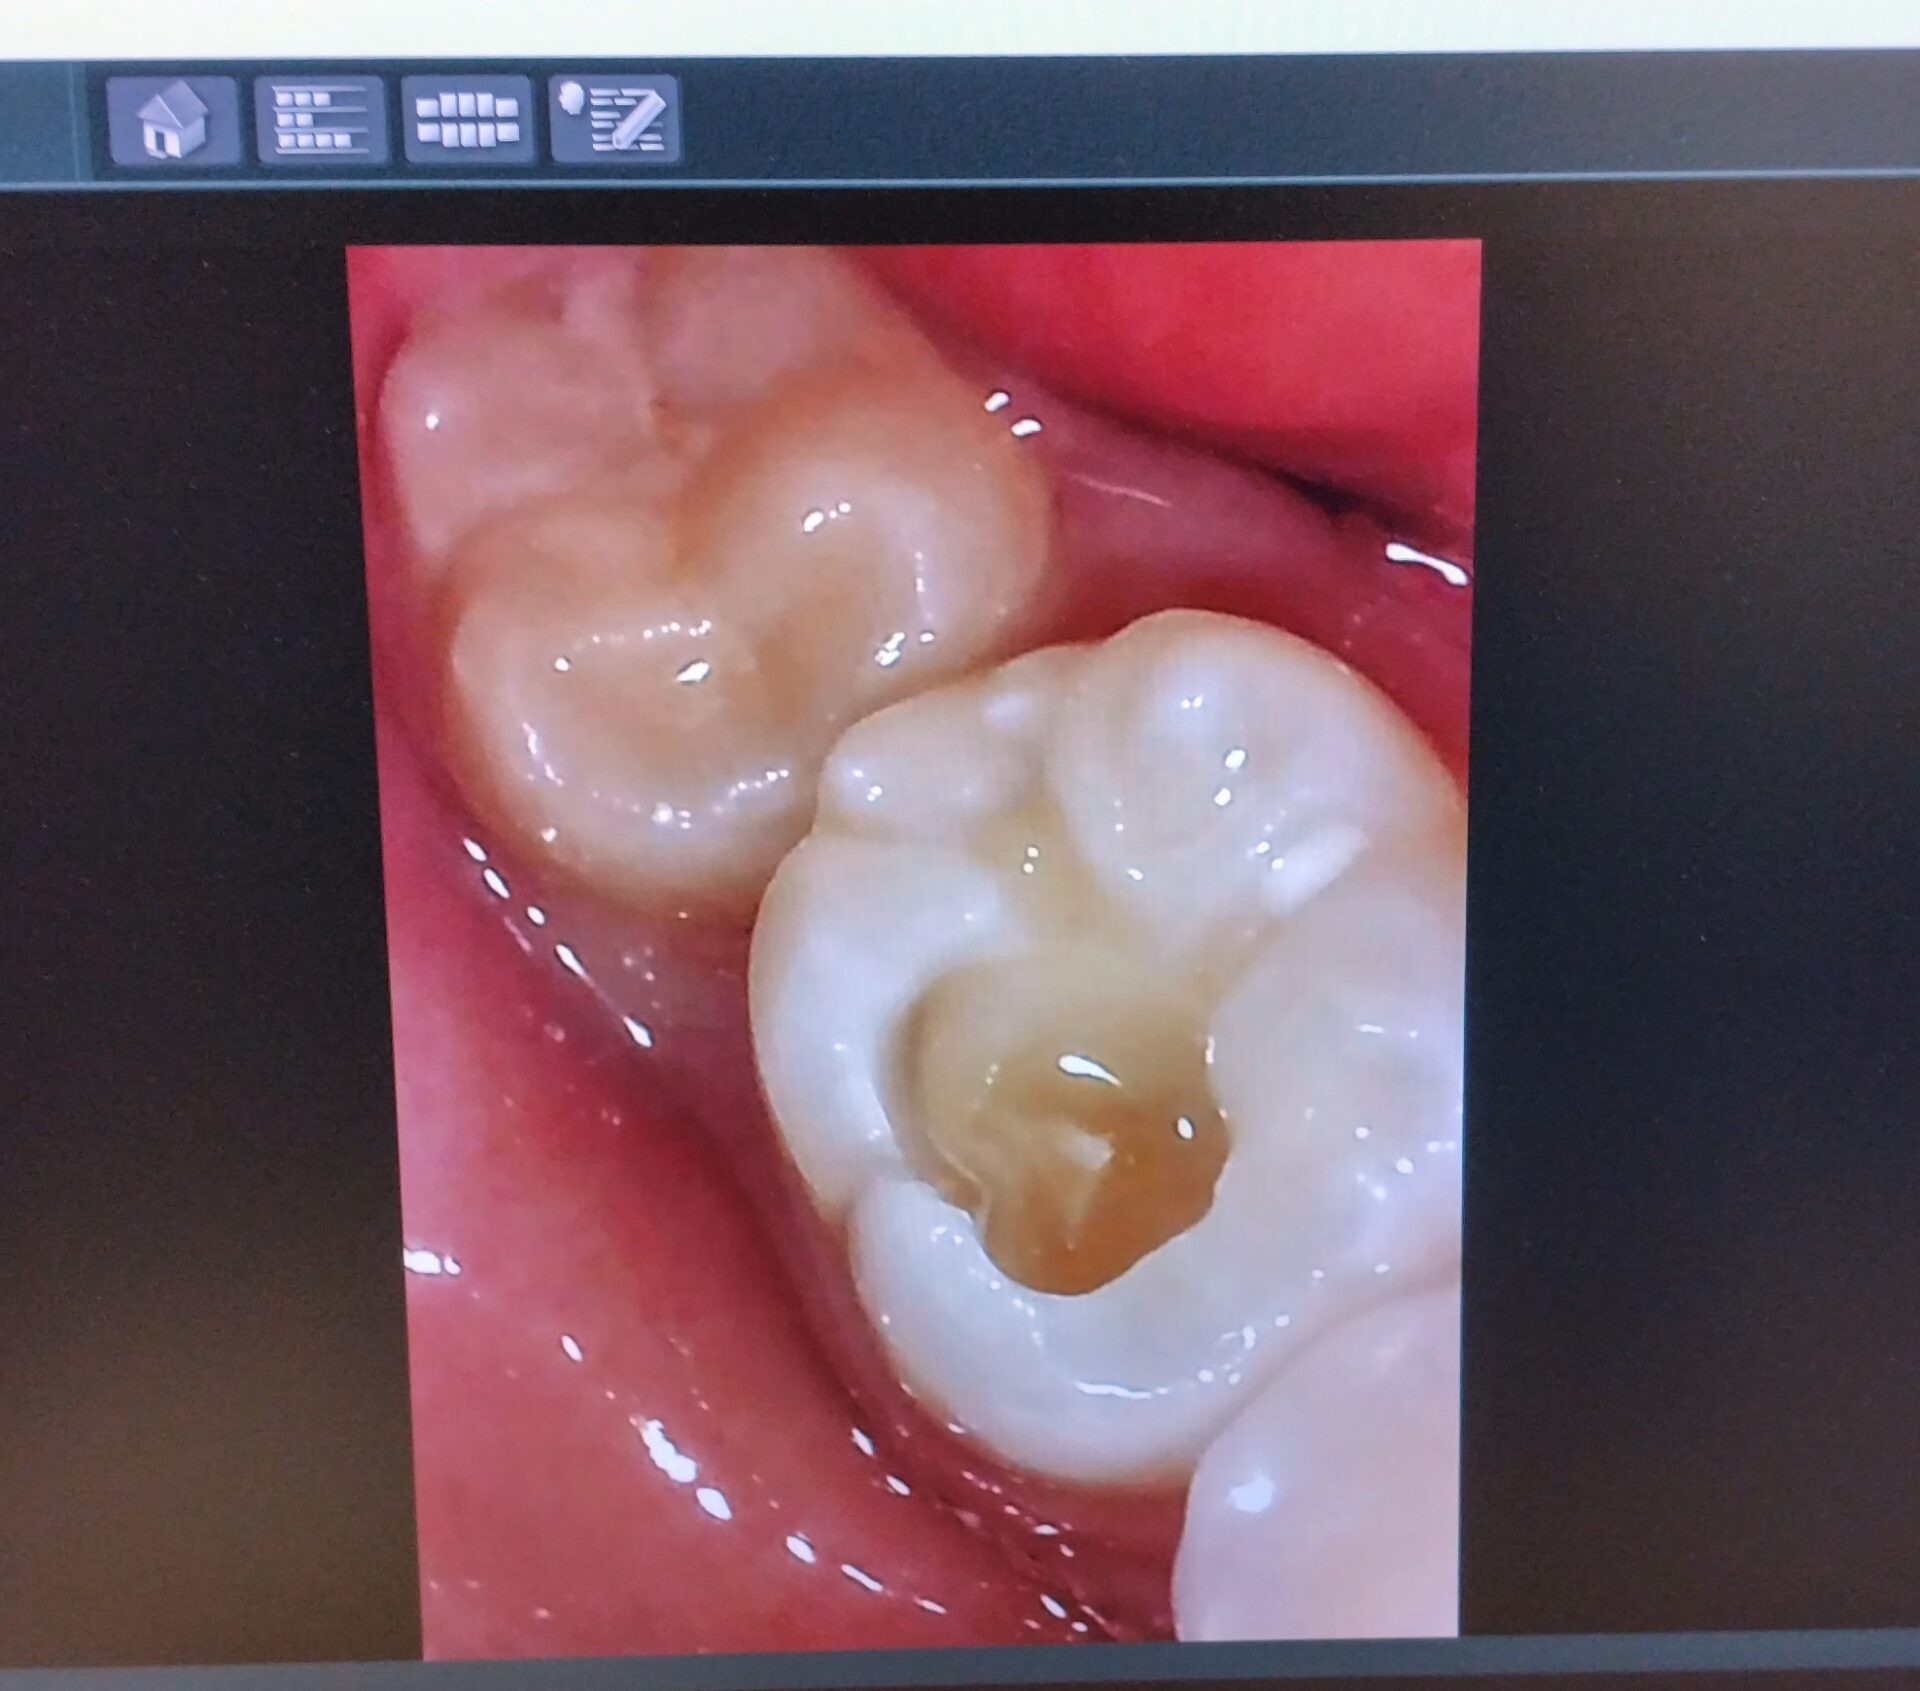 モニターに映し出された虫歯を取っている途中の口腔内カメラの画像